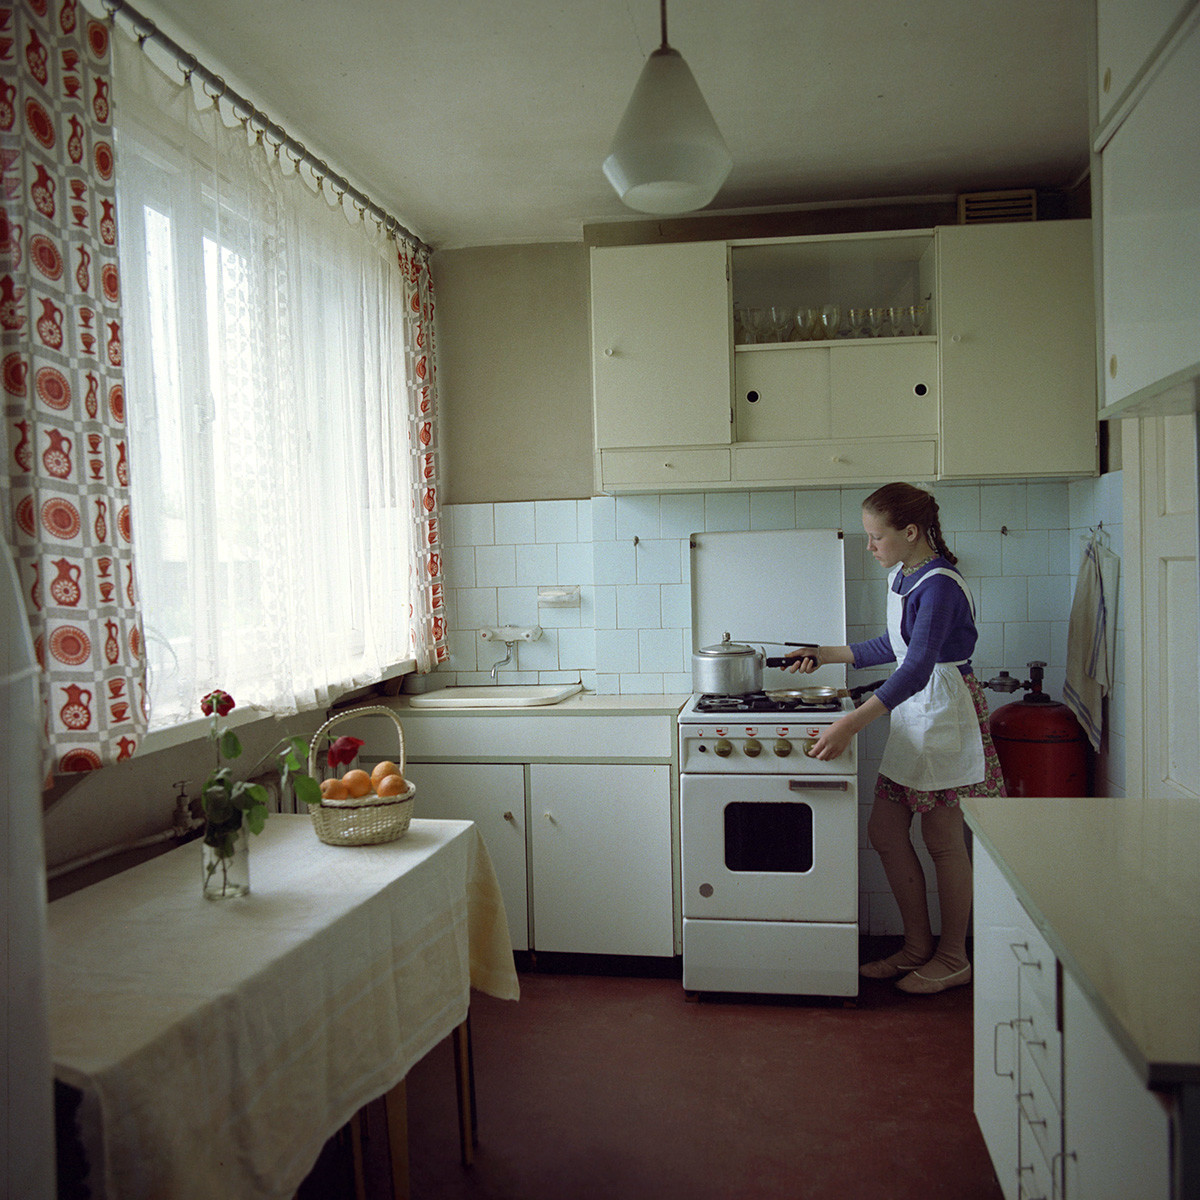 A kitchen in Soviet Riga, 1974.